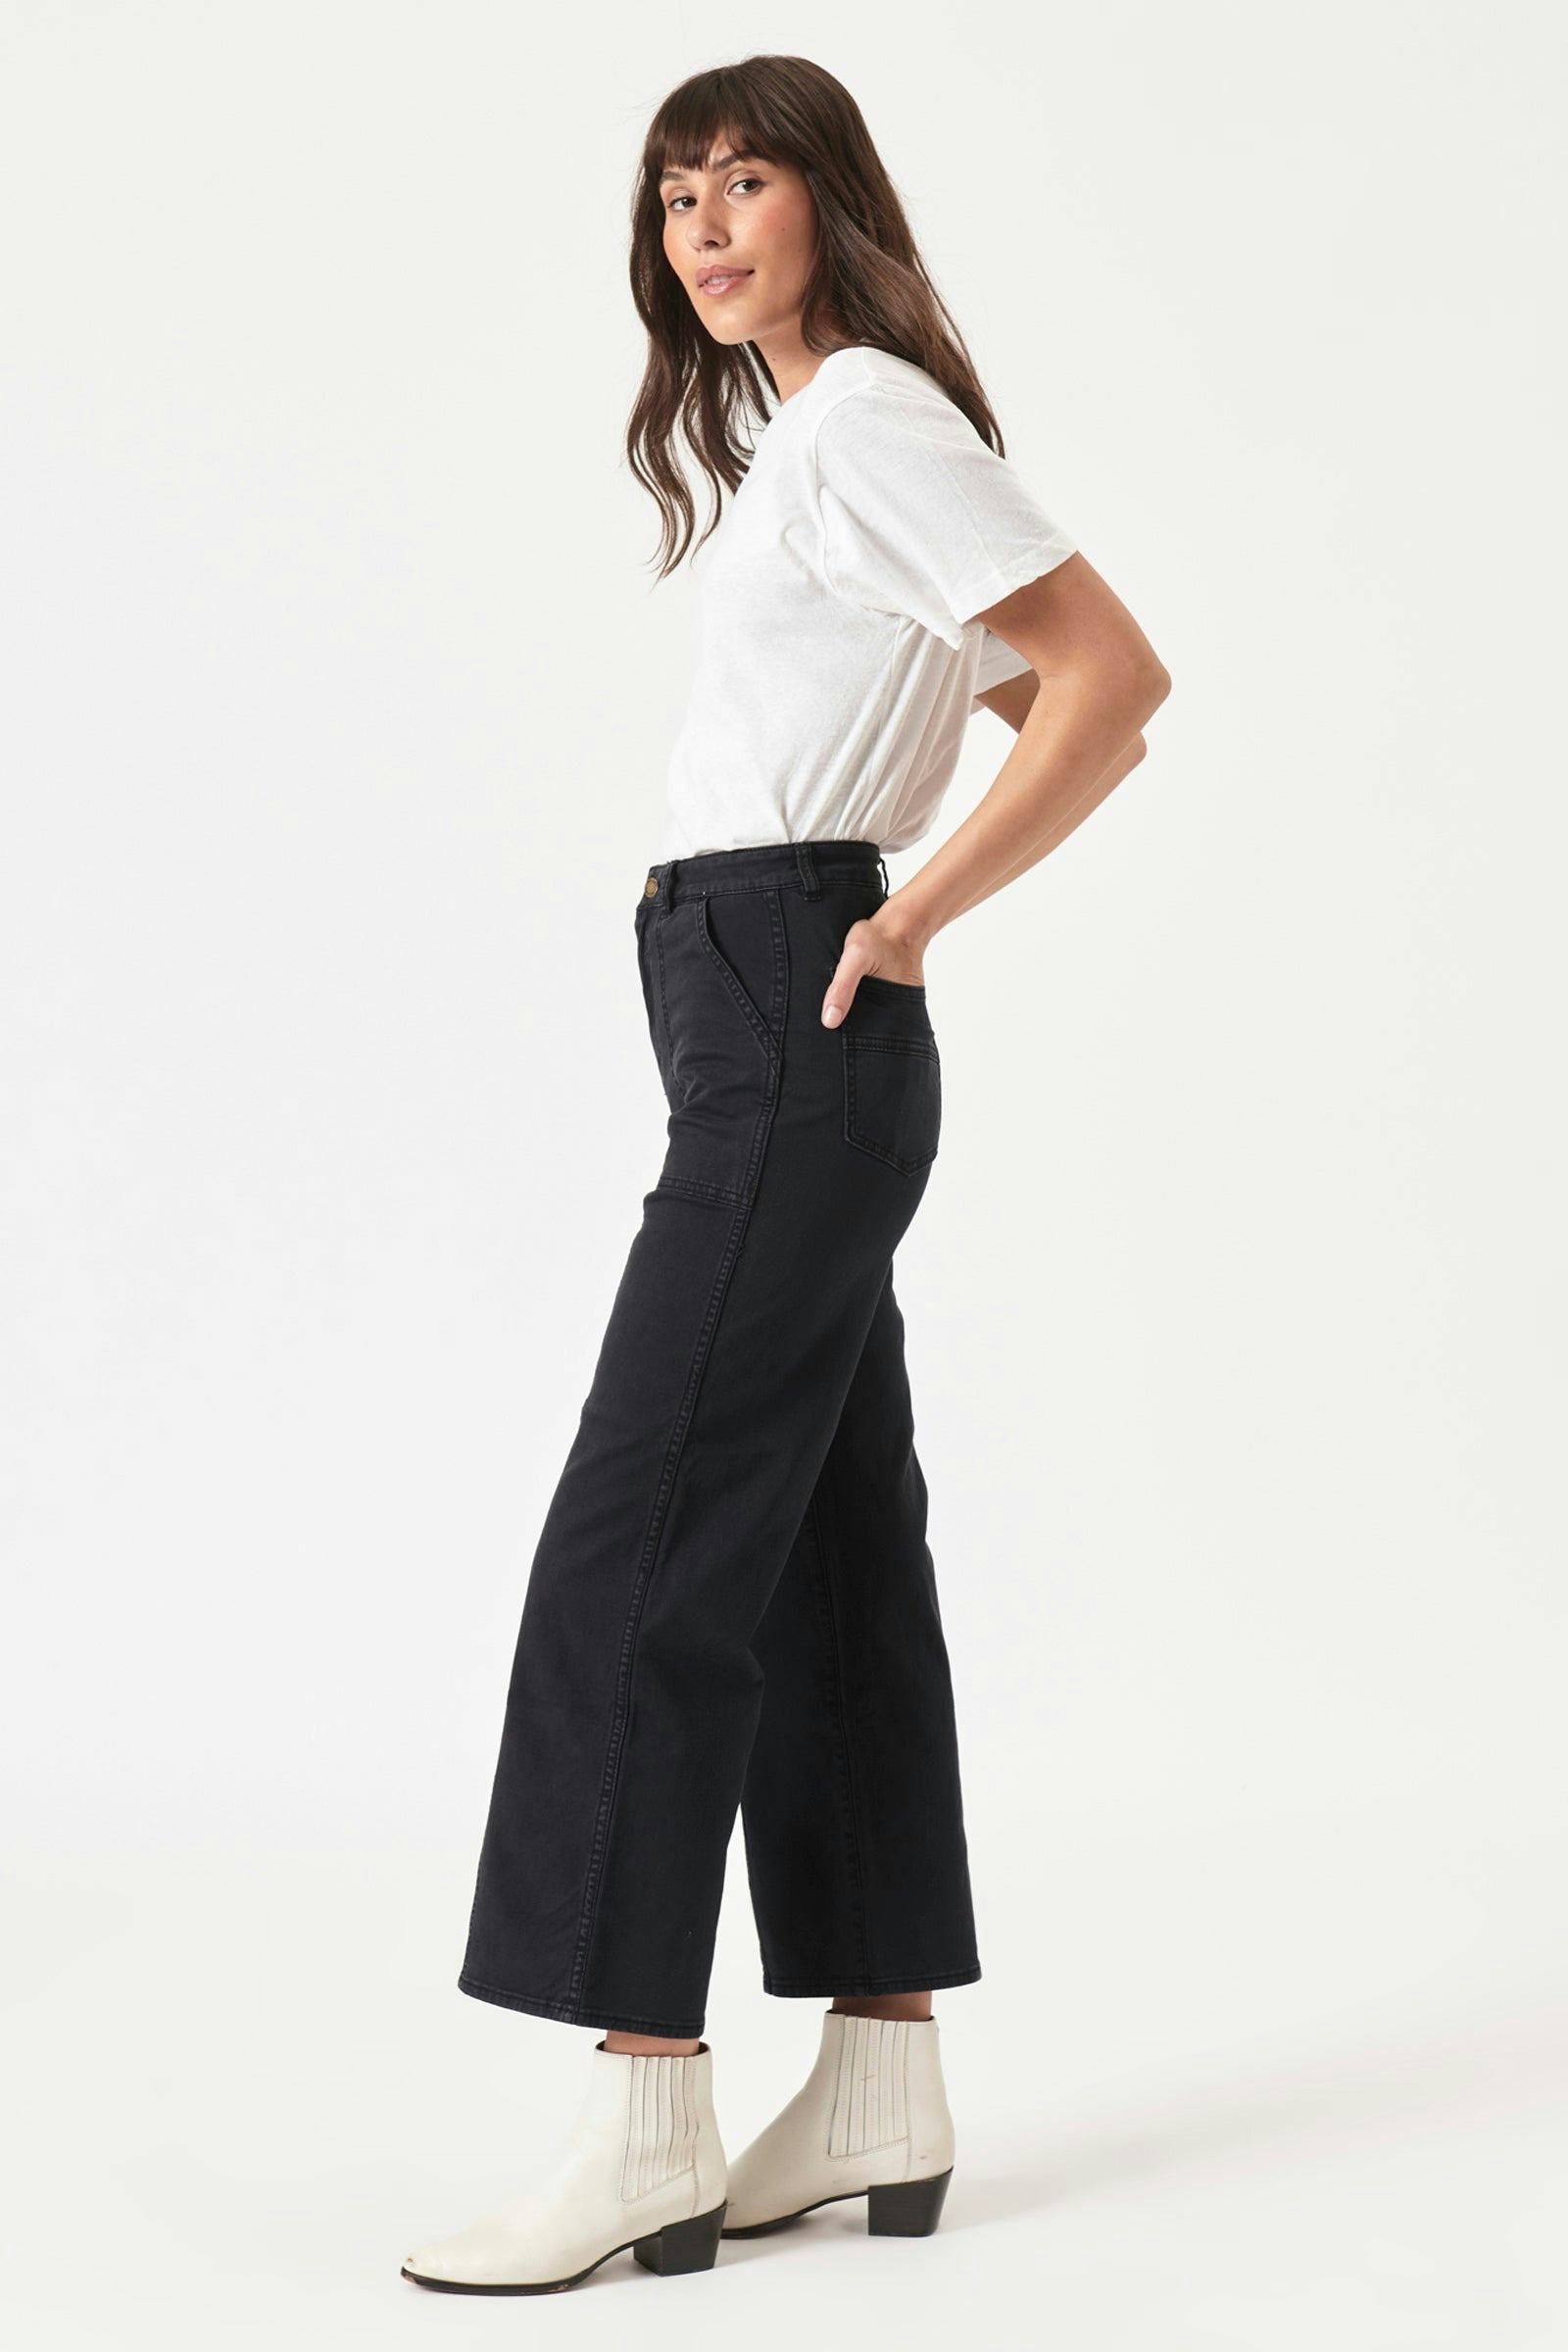 Buy Heidi Jean - Trade Black Online | Rollas Jeans